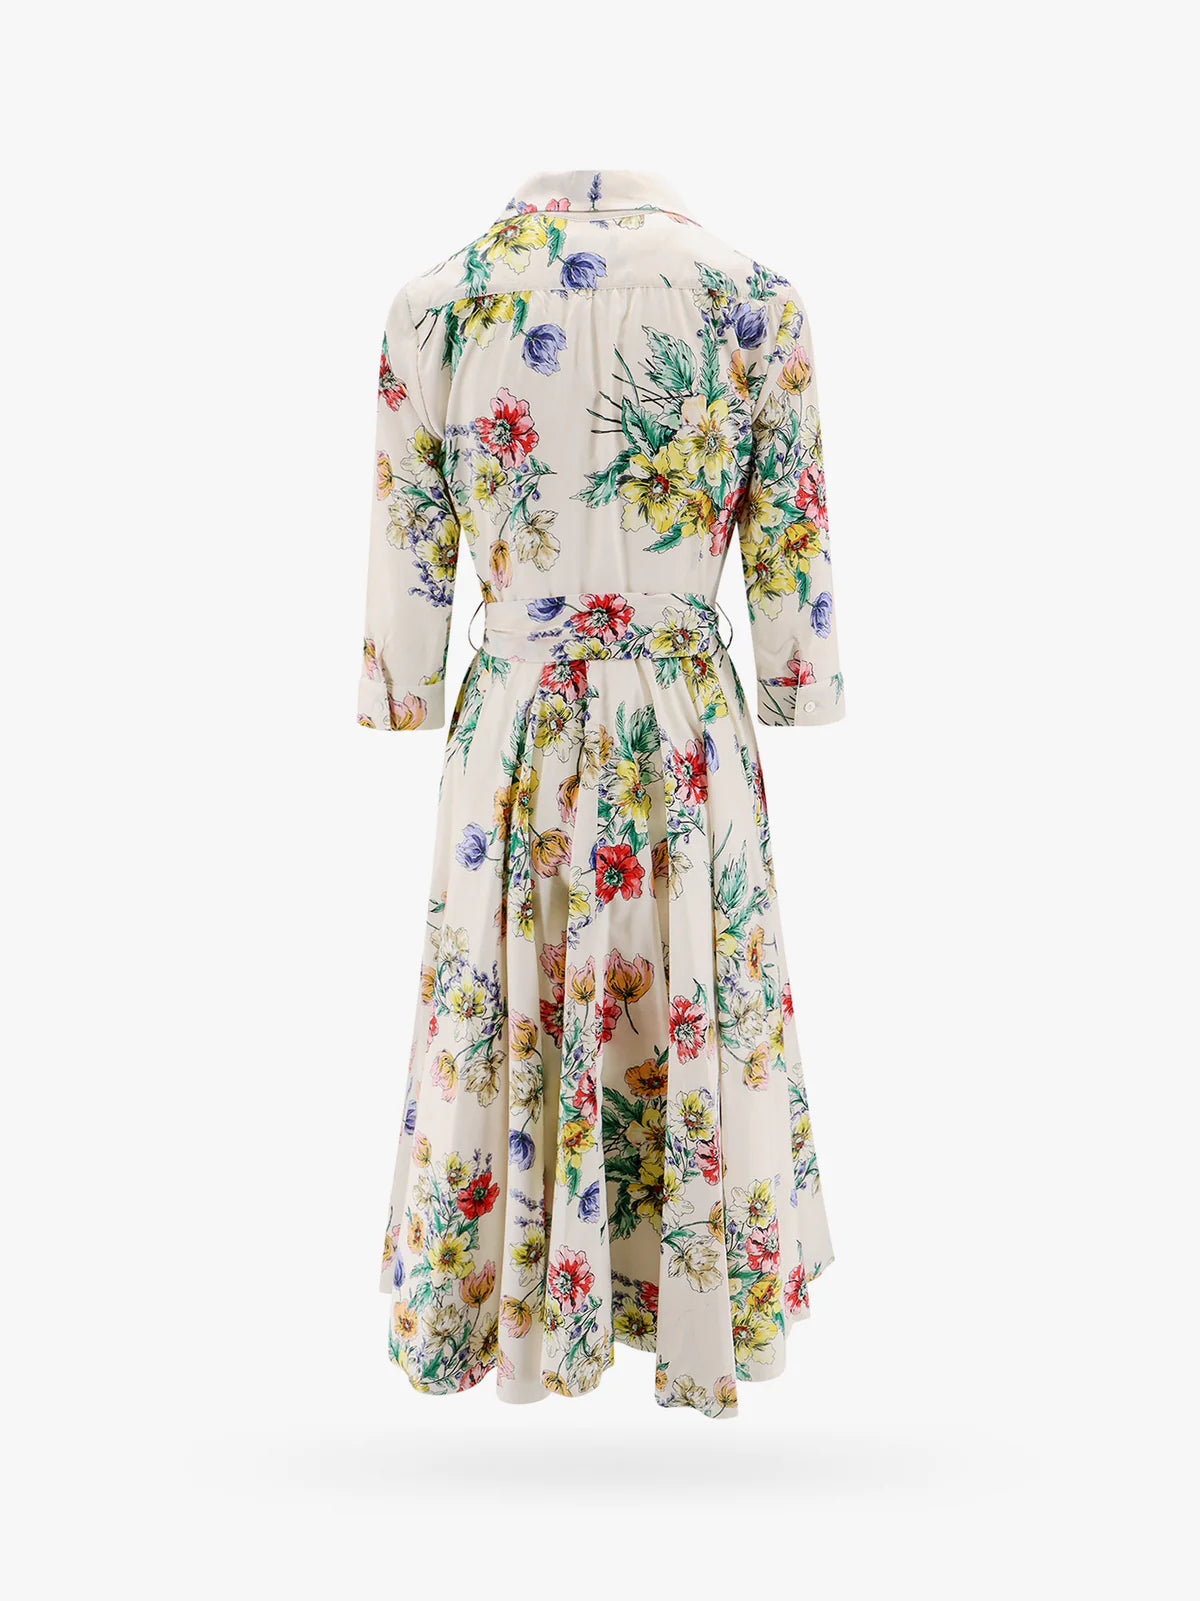 Spritz Dress in Fiore by Lavi Couture